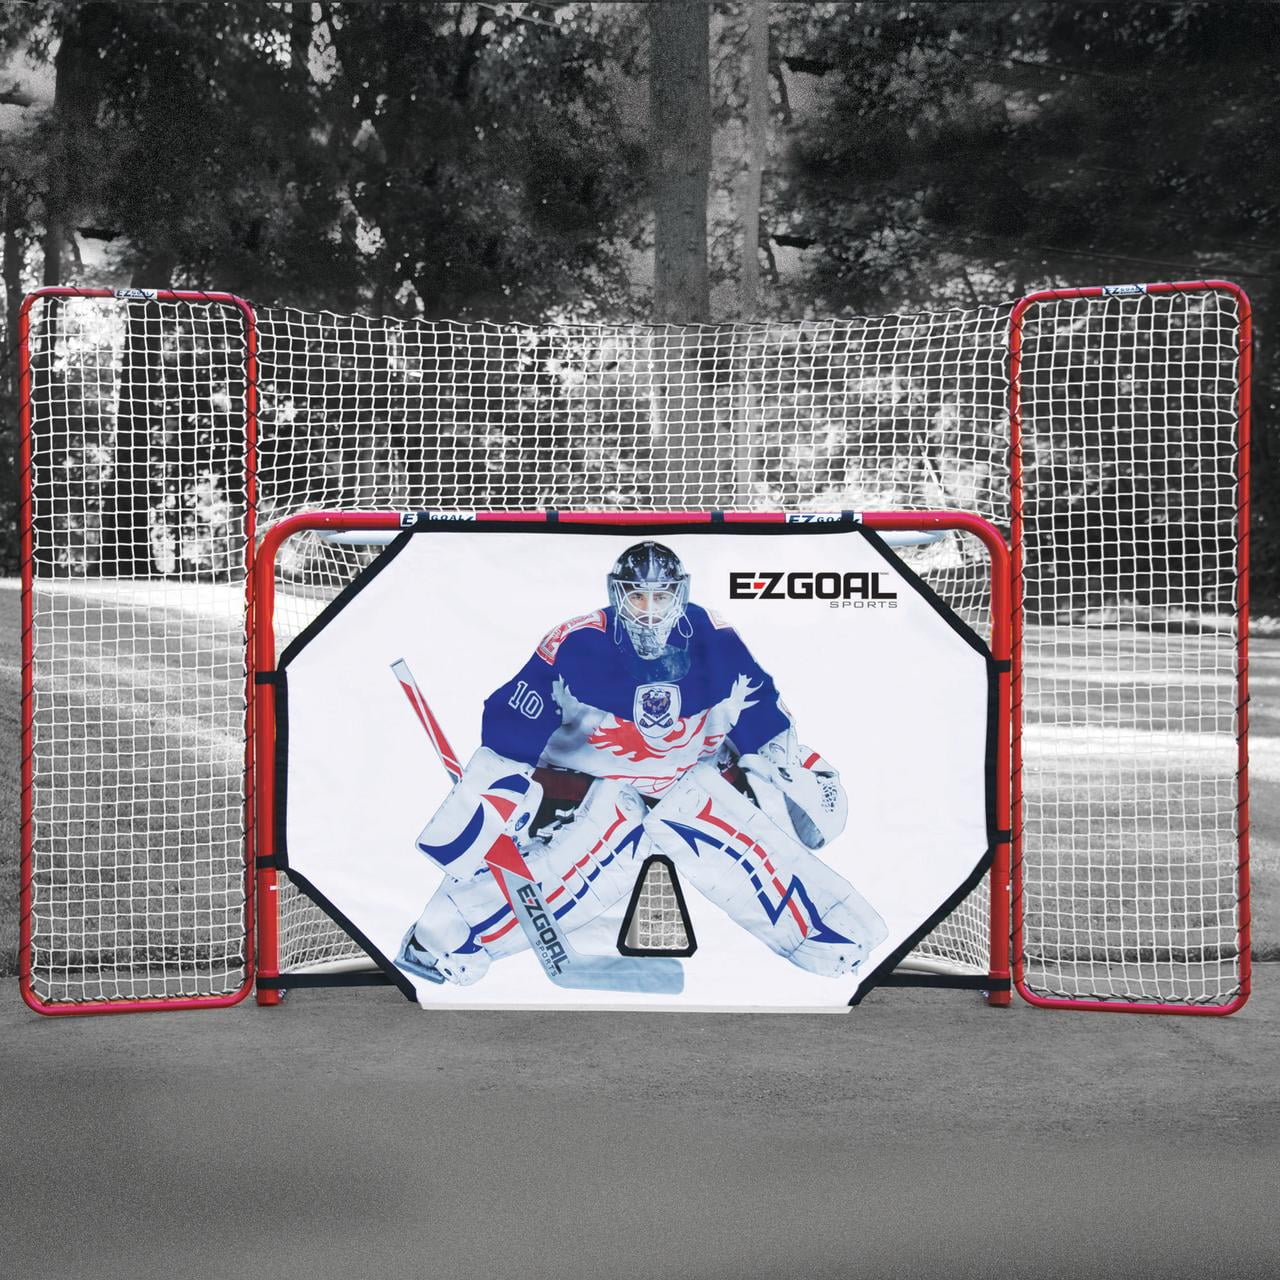 livraison gratuite environ 1.83 m Nouveau ezgoal hockey de remplacement net 4 x 6 ft 